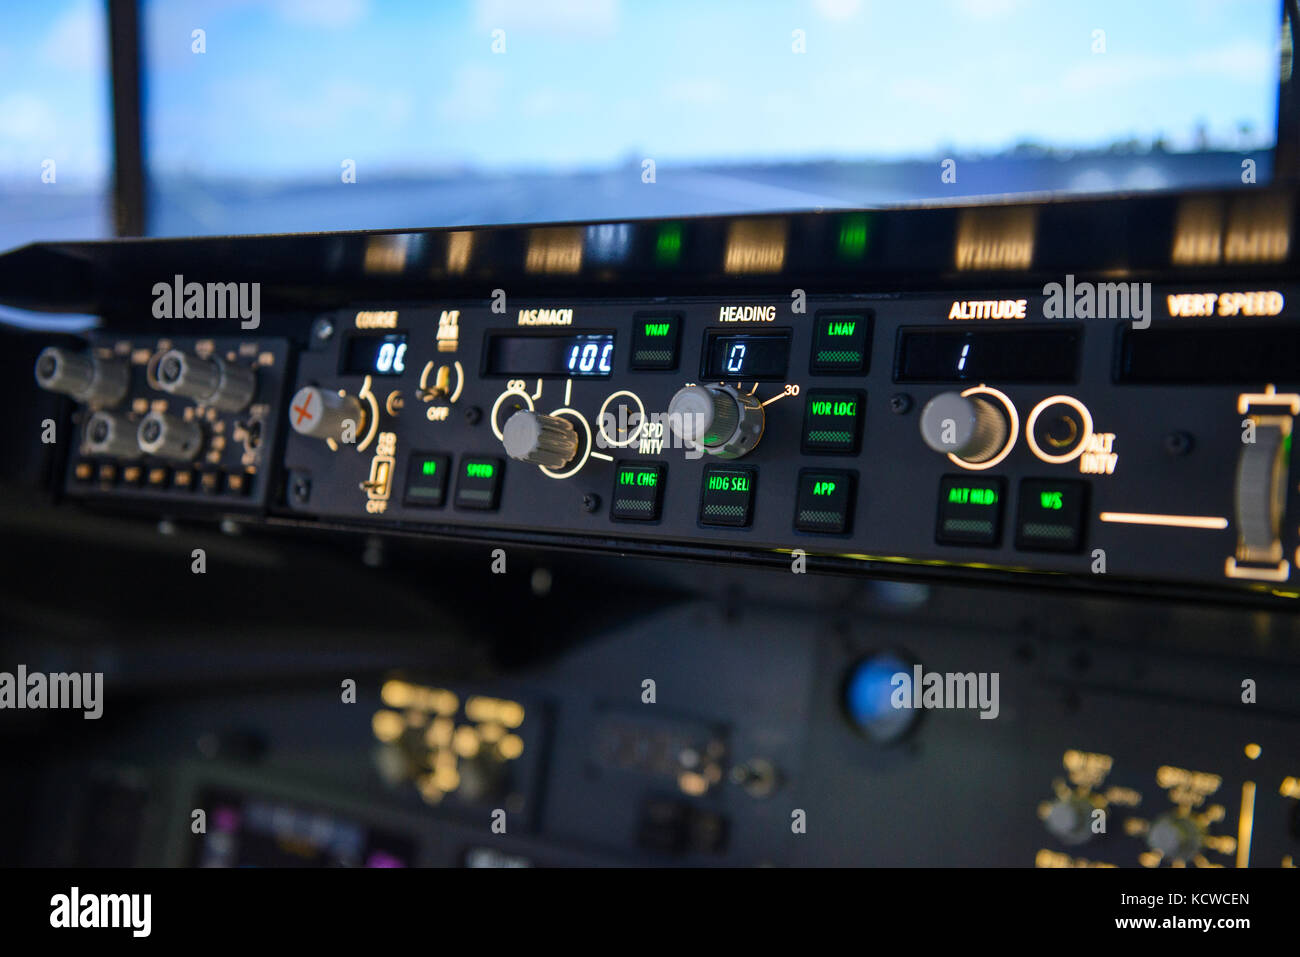 Aviones de la pantalla del panel de controles de título de piloto automático Foto de stock